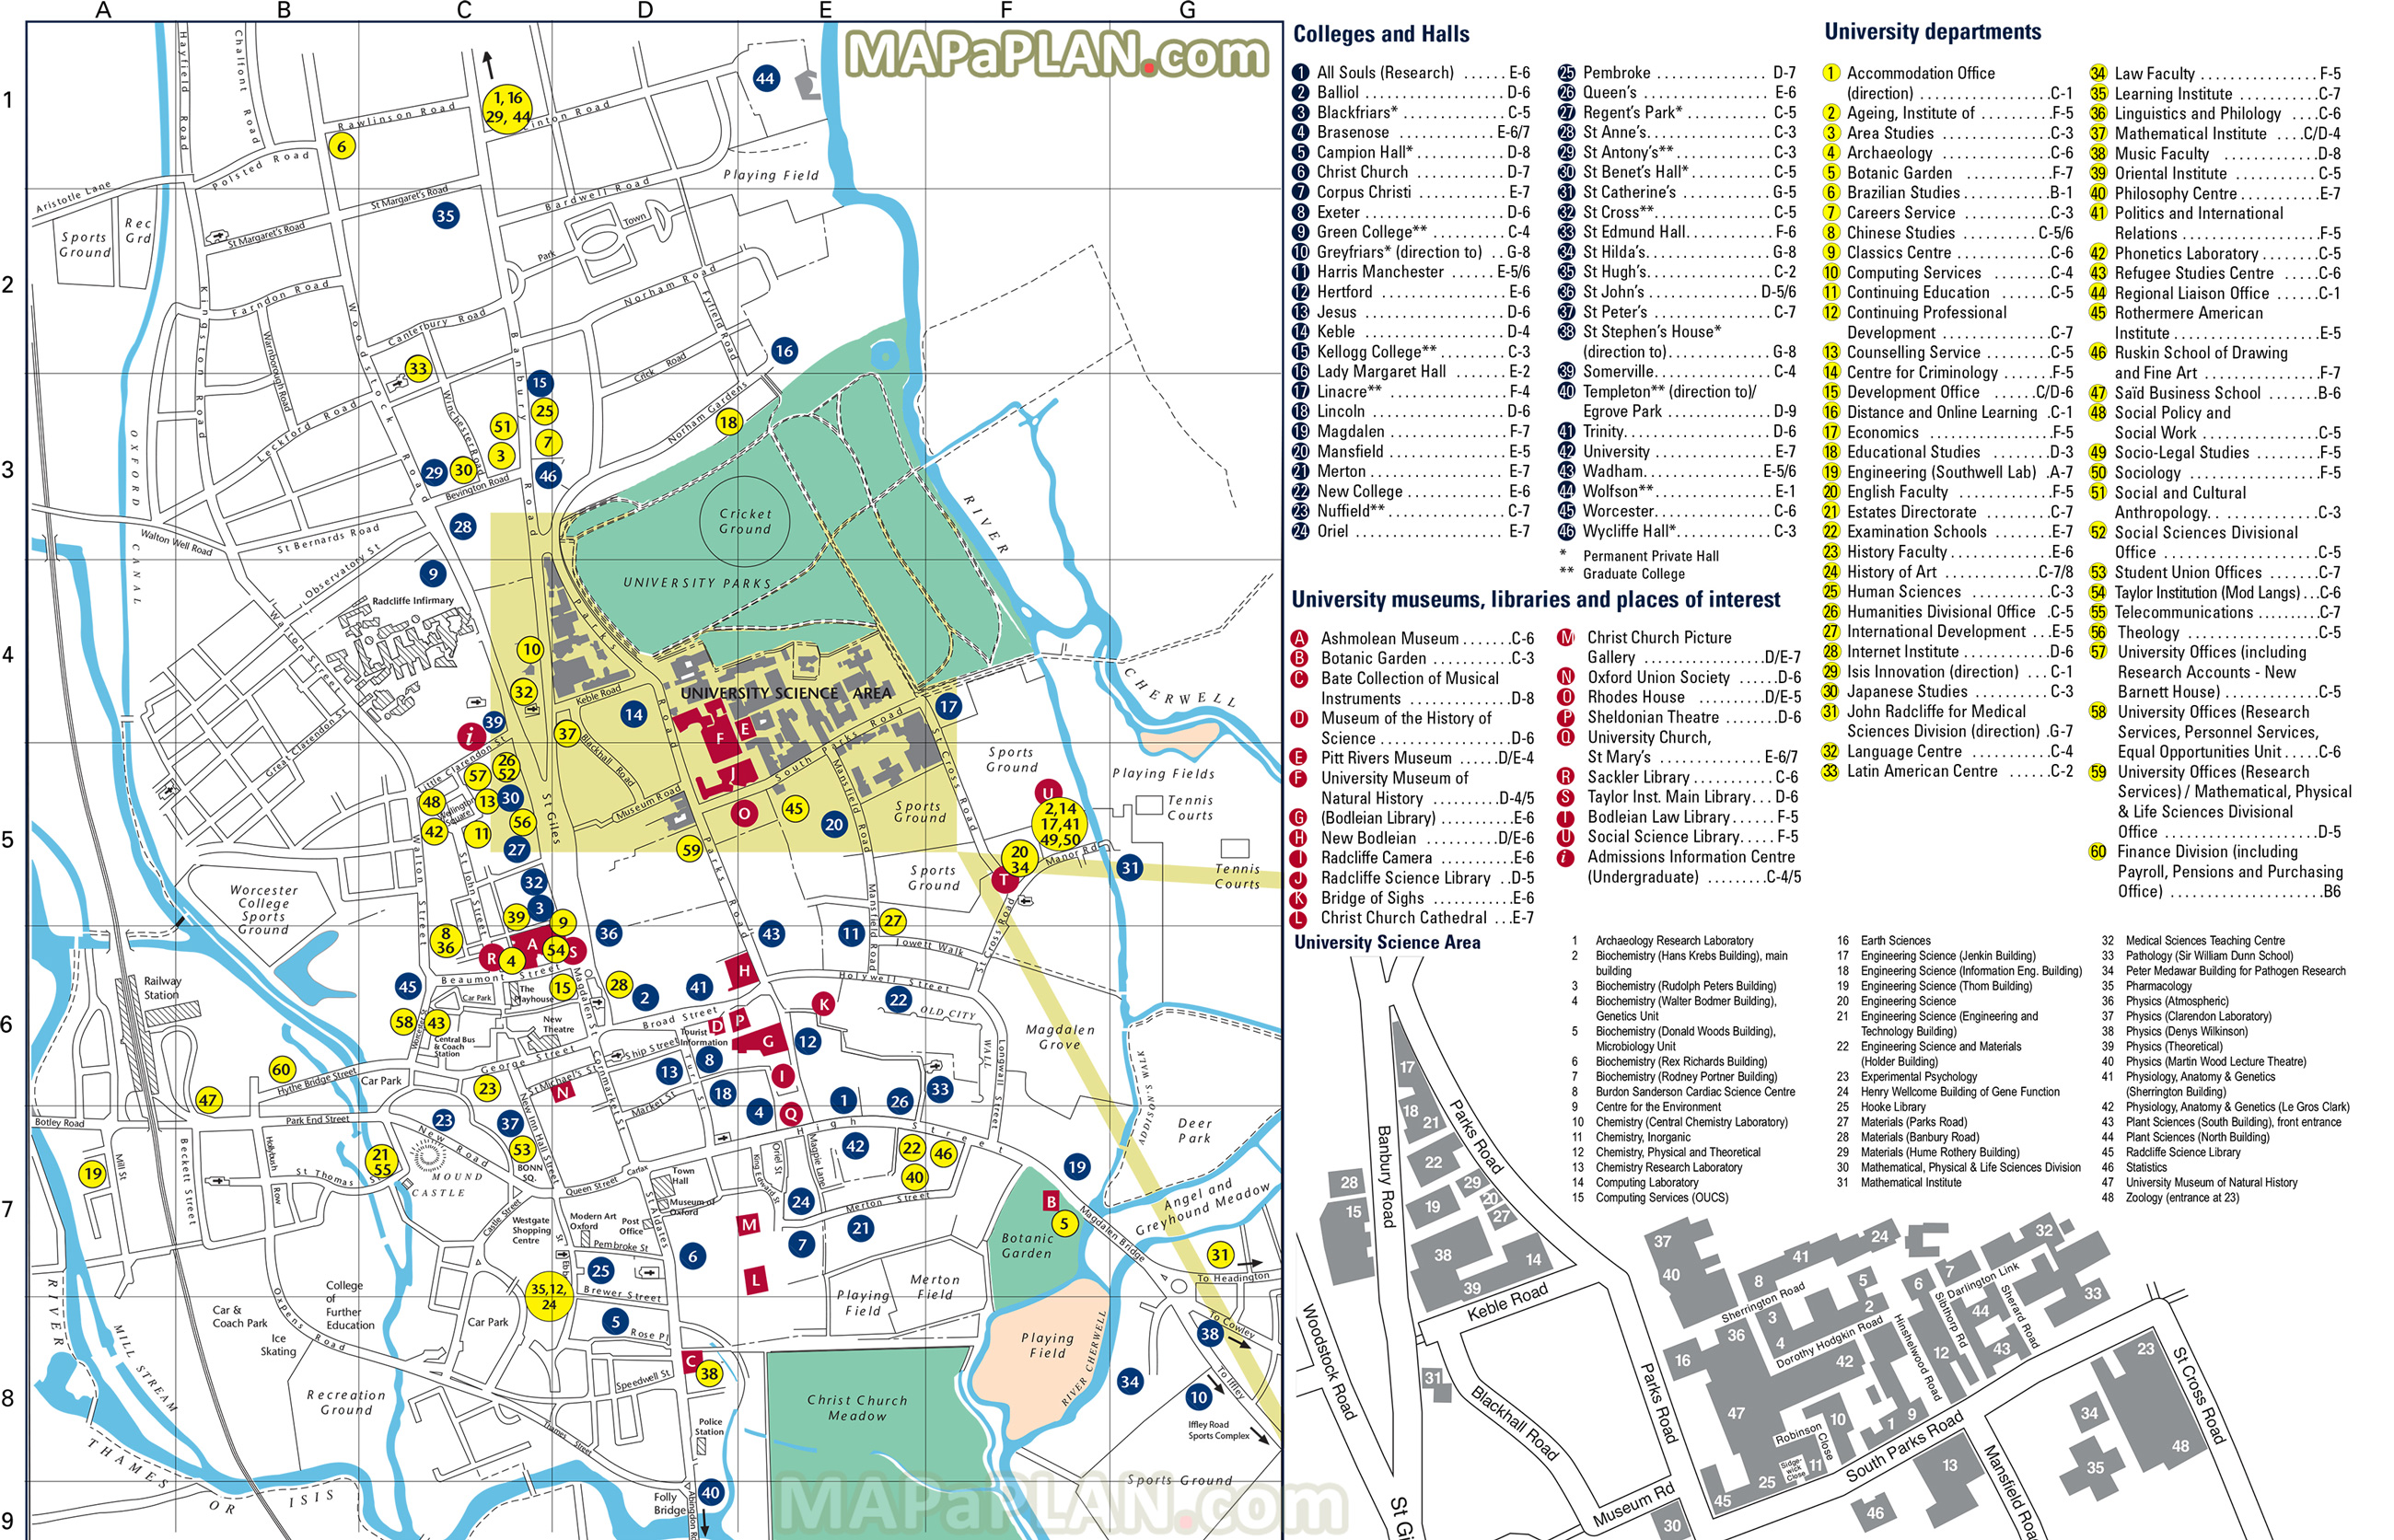 oxford-city-maps-pdfdownload-free-software-programs-online-freewaregm